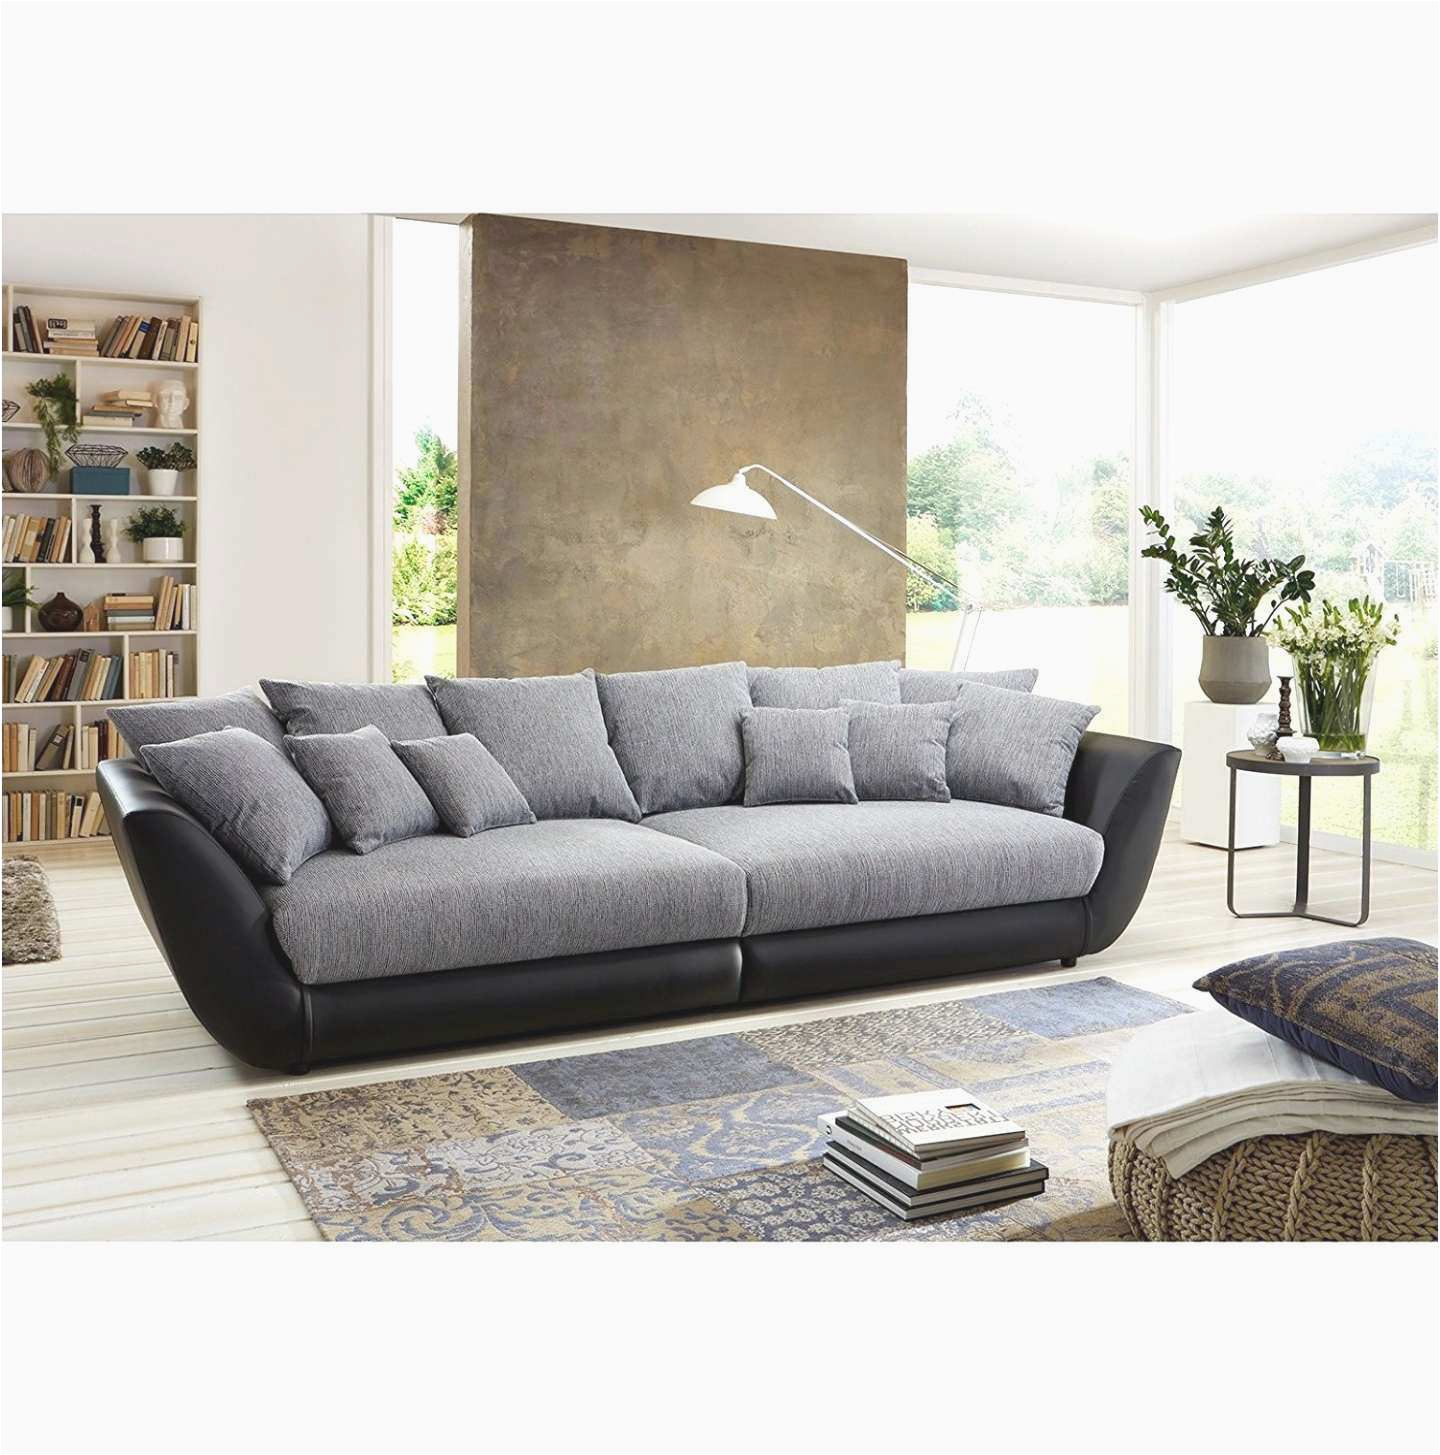 Furniture sofa Design Picture sofa L form Frisch U sofa Xxl Schön Big sofa L form Luxus U